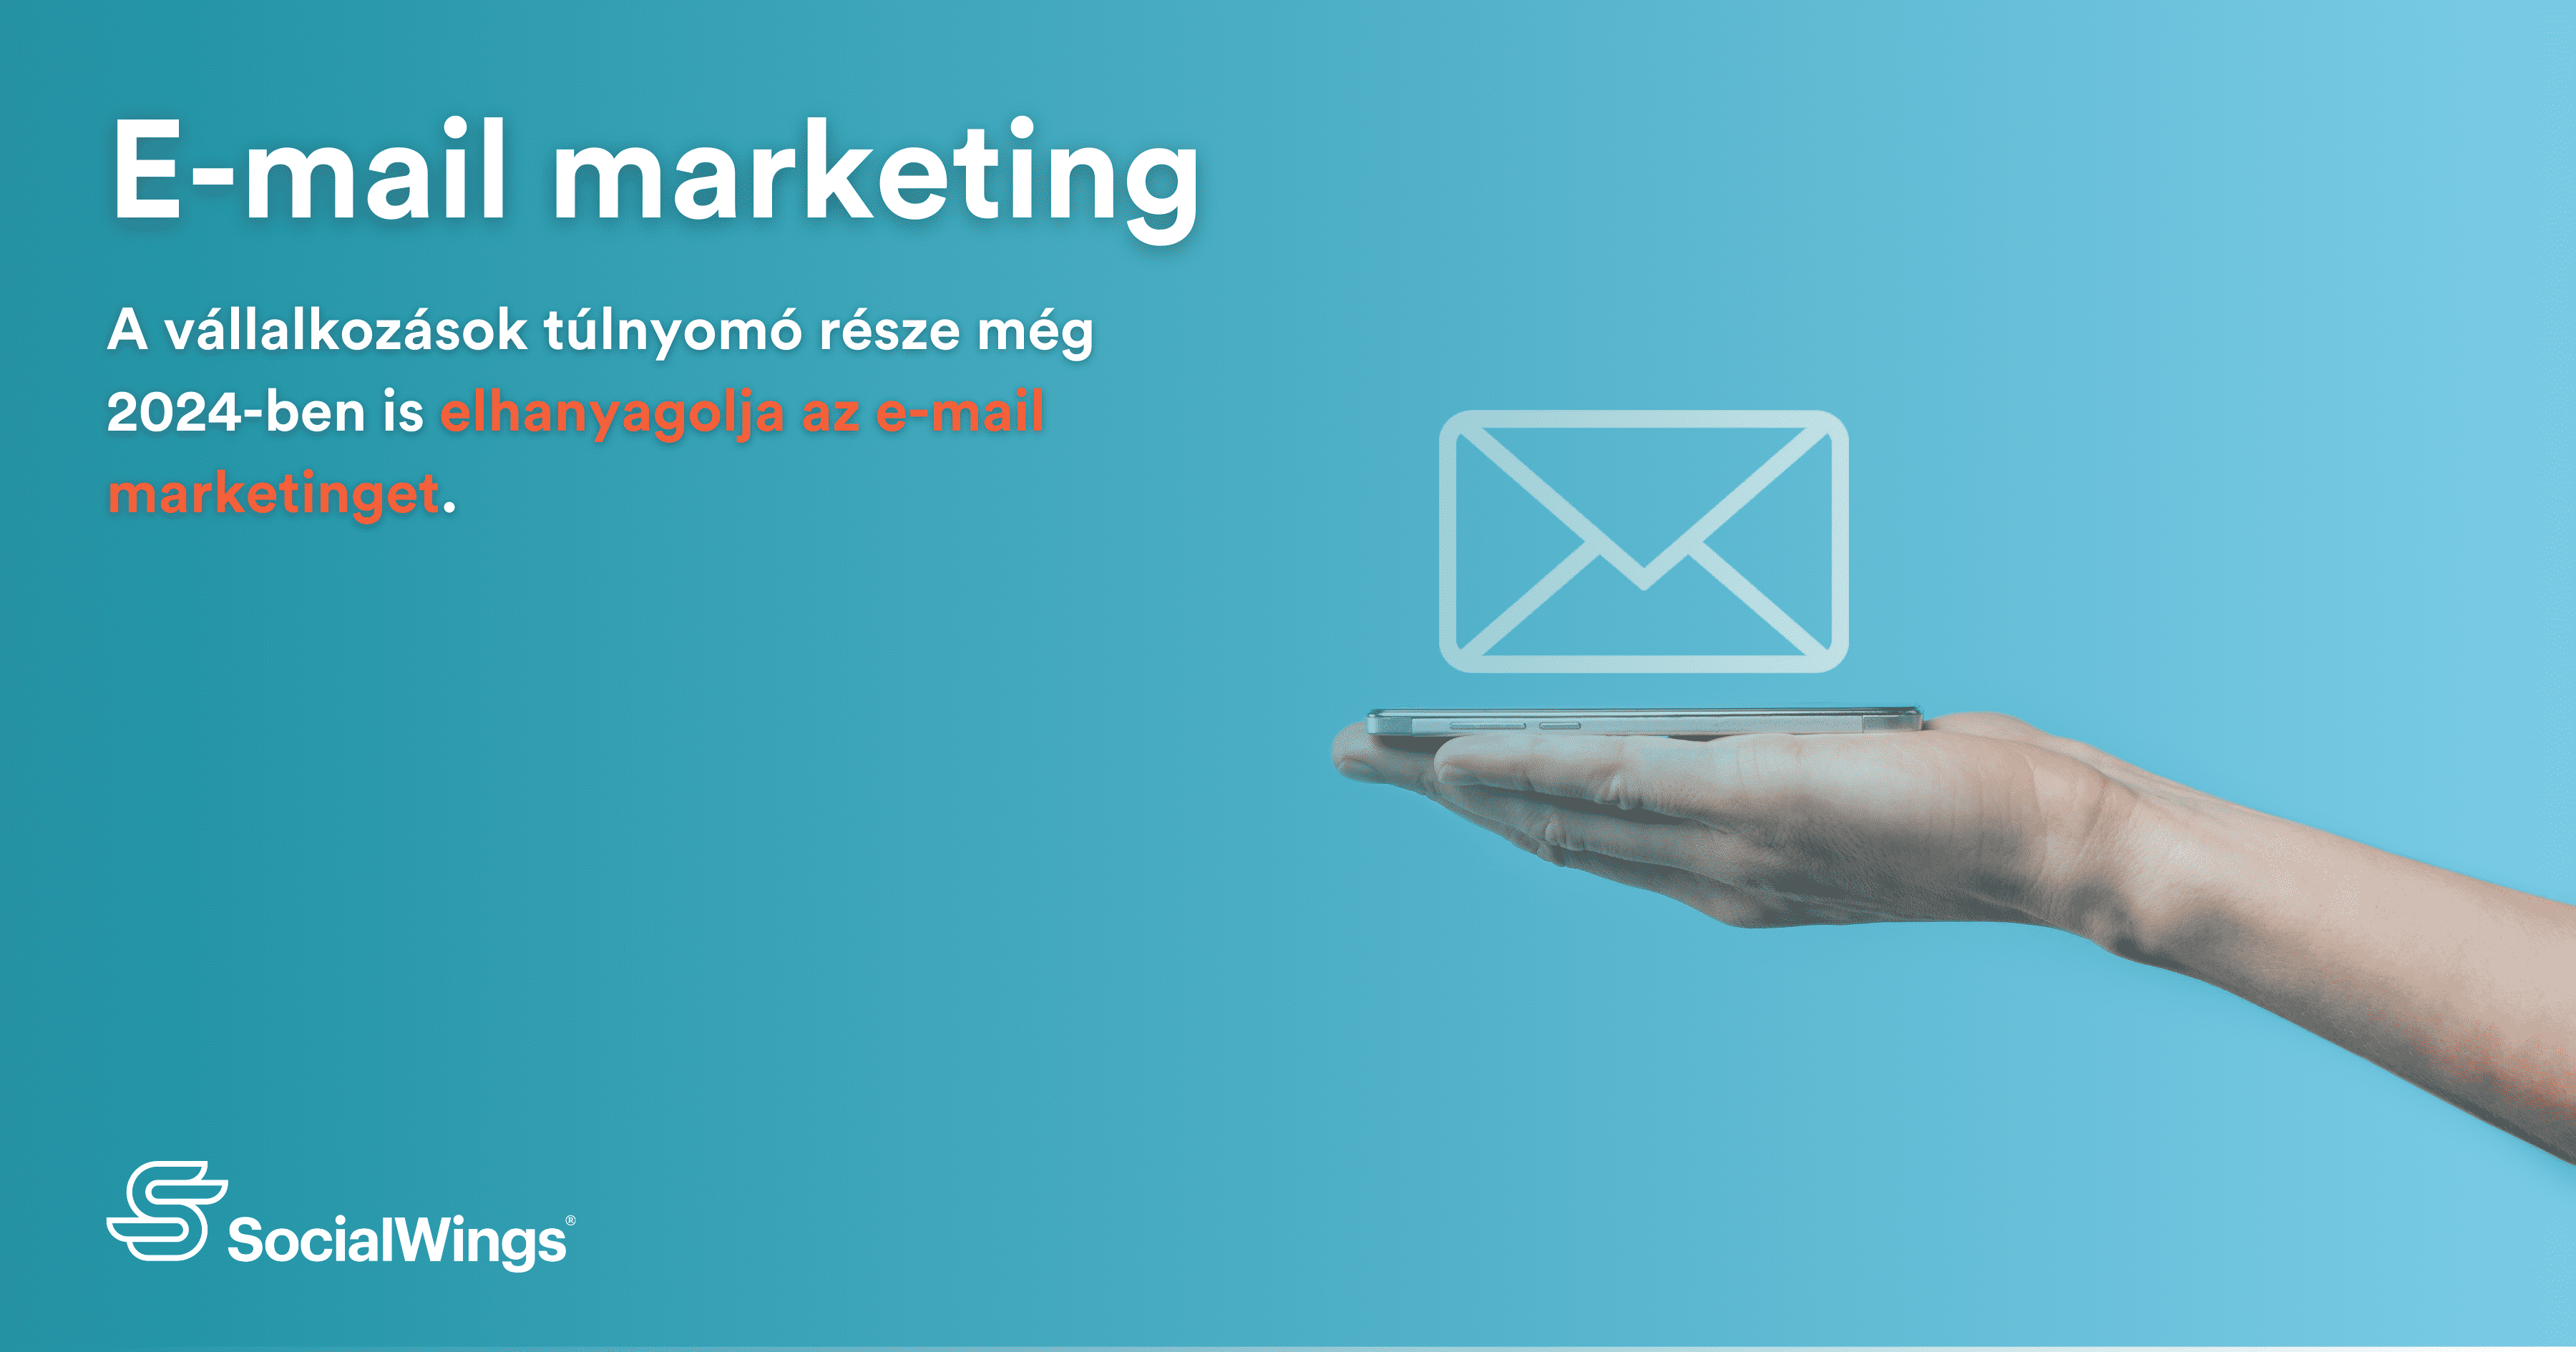 E-mail marketing 2024: Az eddigi legrészletesebb leírás az e-mail marketingben megbúvó rejtett tartalékokról és azok hatásáról a vállalkozásra.